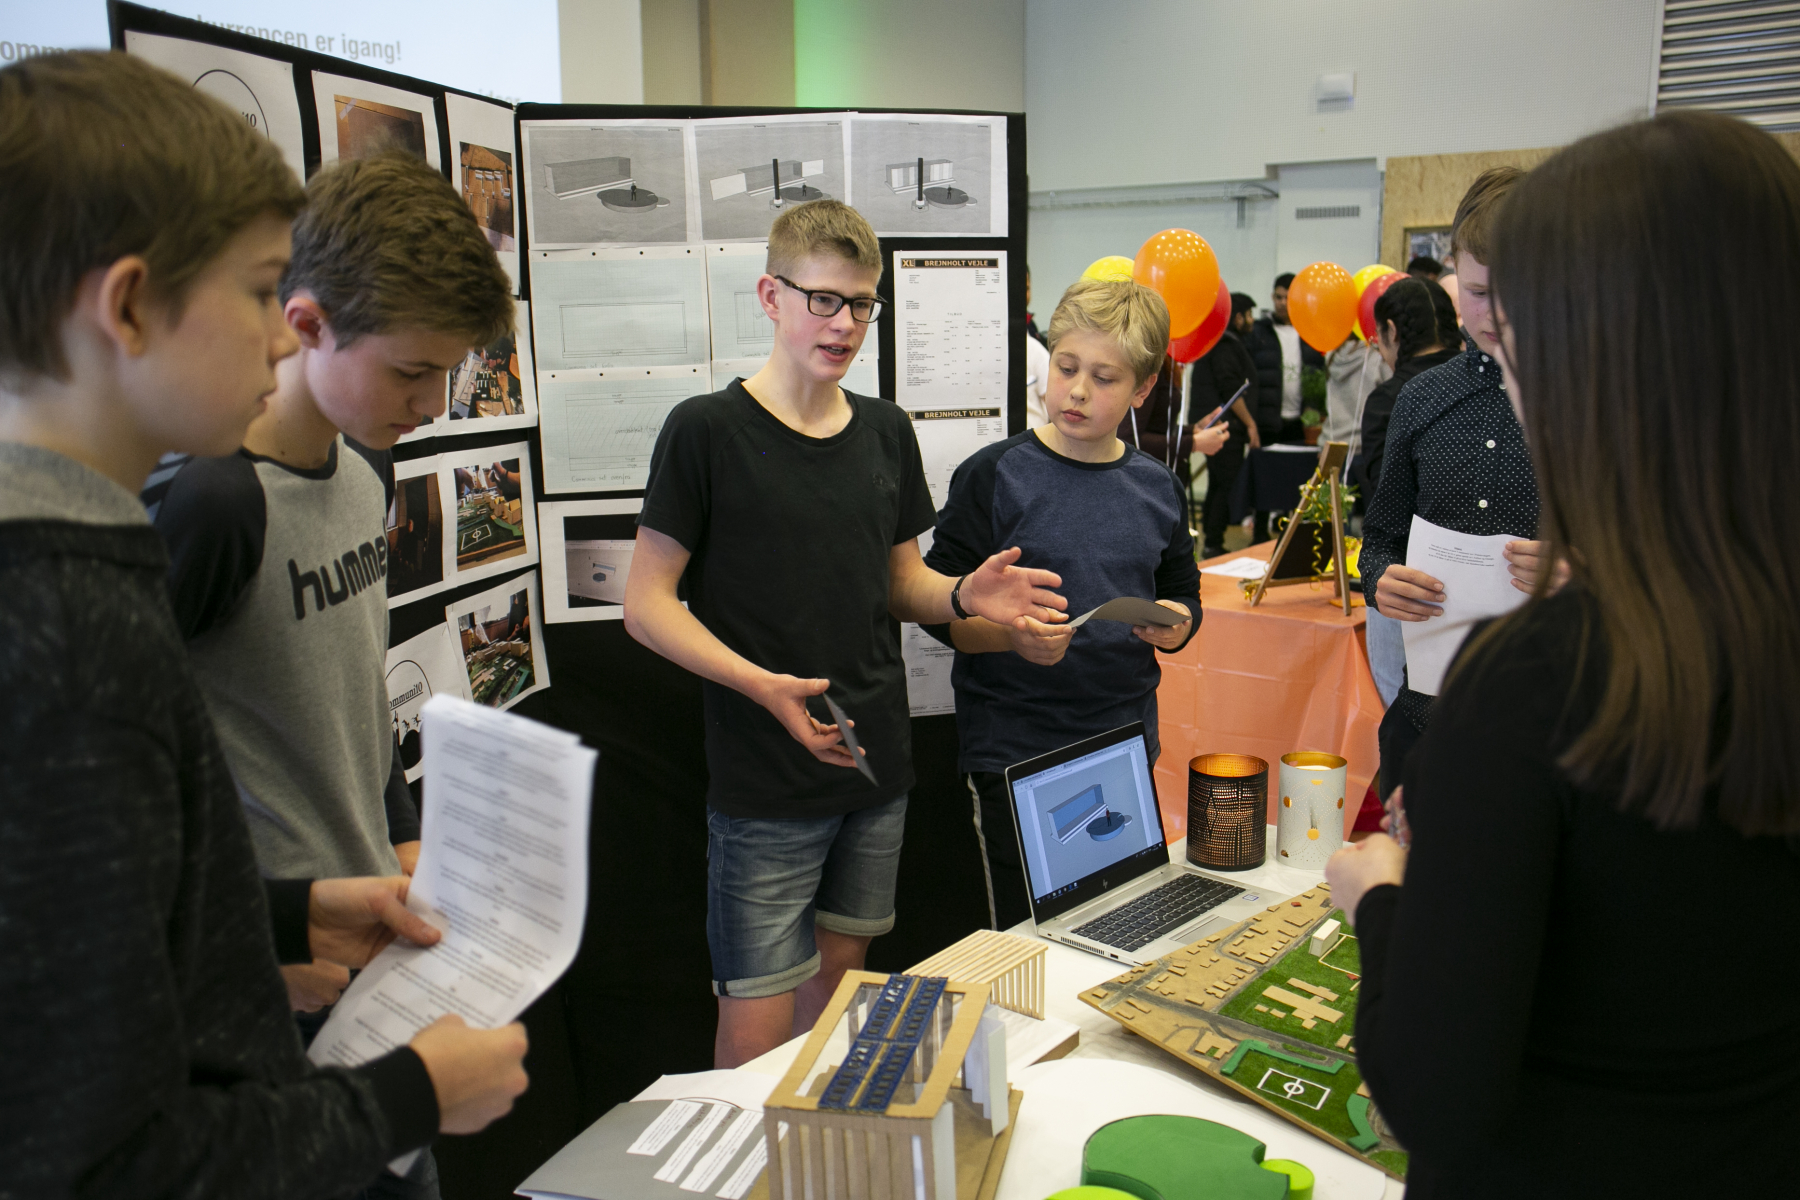 Elever fra skoler i Aarhus pincher deres idéer for dommerne.Den 11. april 2019 afholdes den første konkurrence i projektet Iværksætterunge. Iværksætterunge har til formål at give elever i 7.-9. klasse iværksætterkompetencer og -erfaringer og at give dem et sted, hvor de kan omsætte teori til praksis. På den måde er eleverne med til at skabe en iværksætterkultur i udsatte boligområder i Aarhus.